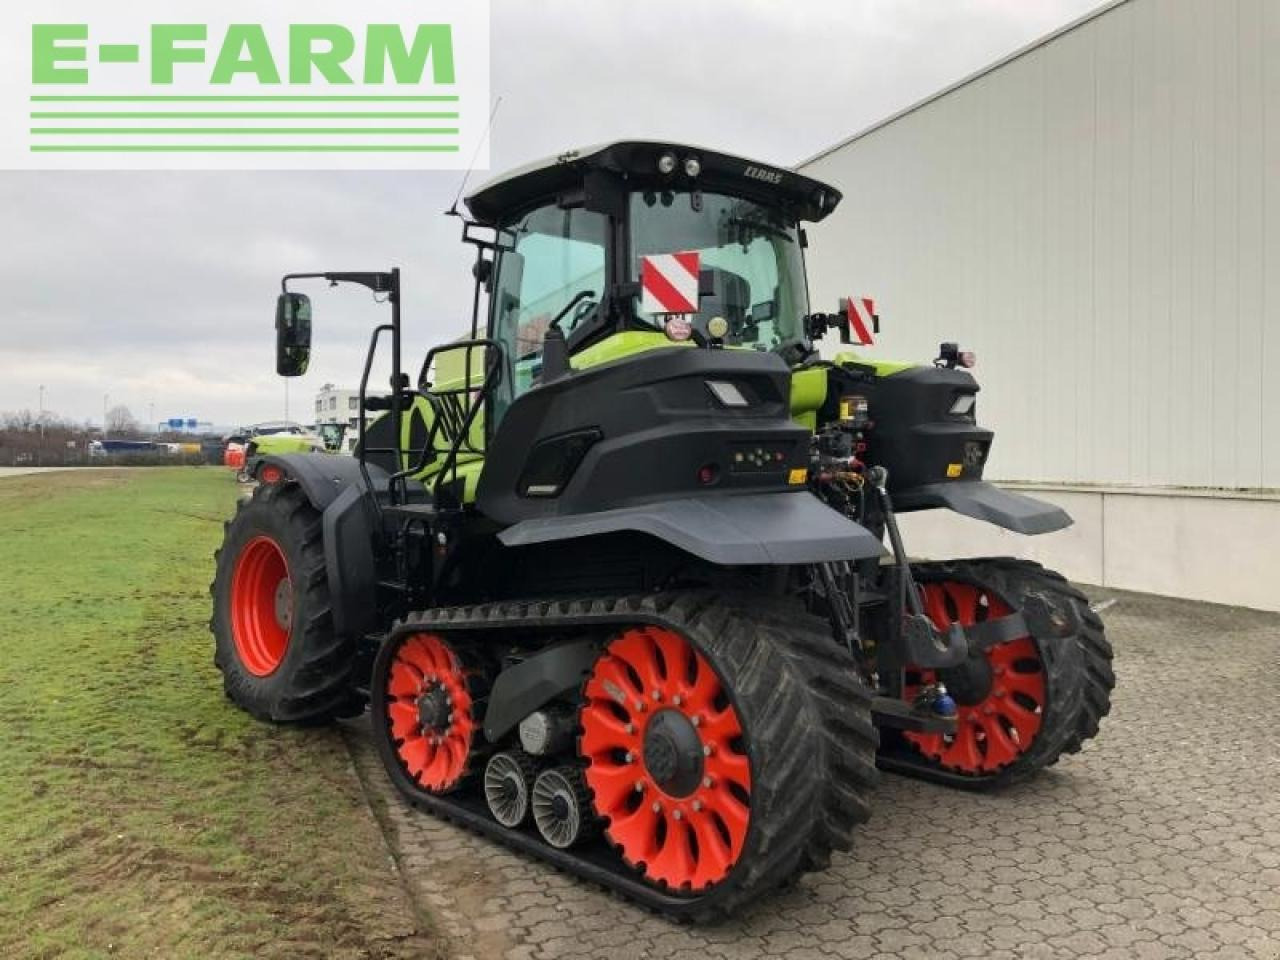 Farm tractor CLAAS axion 960 terratrac